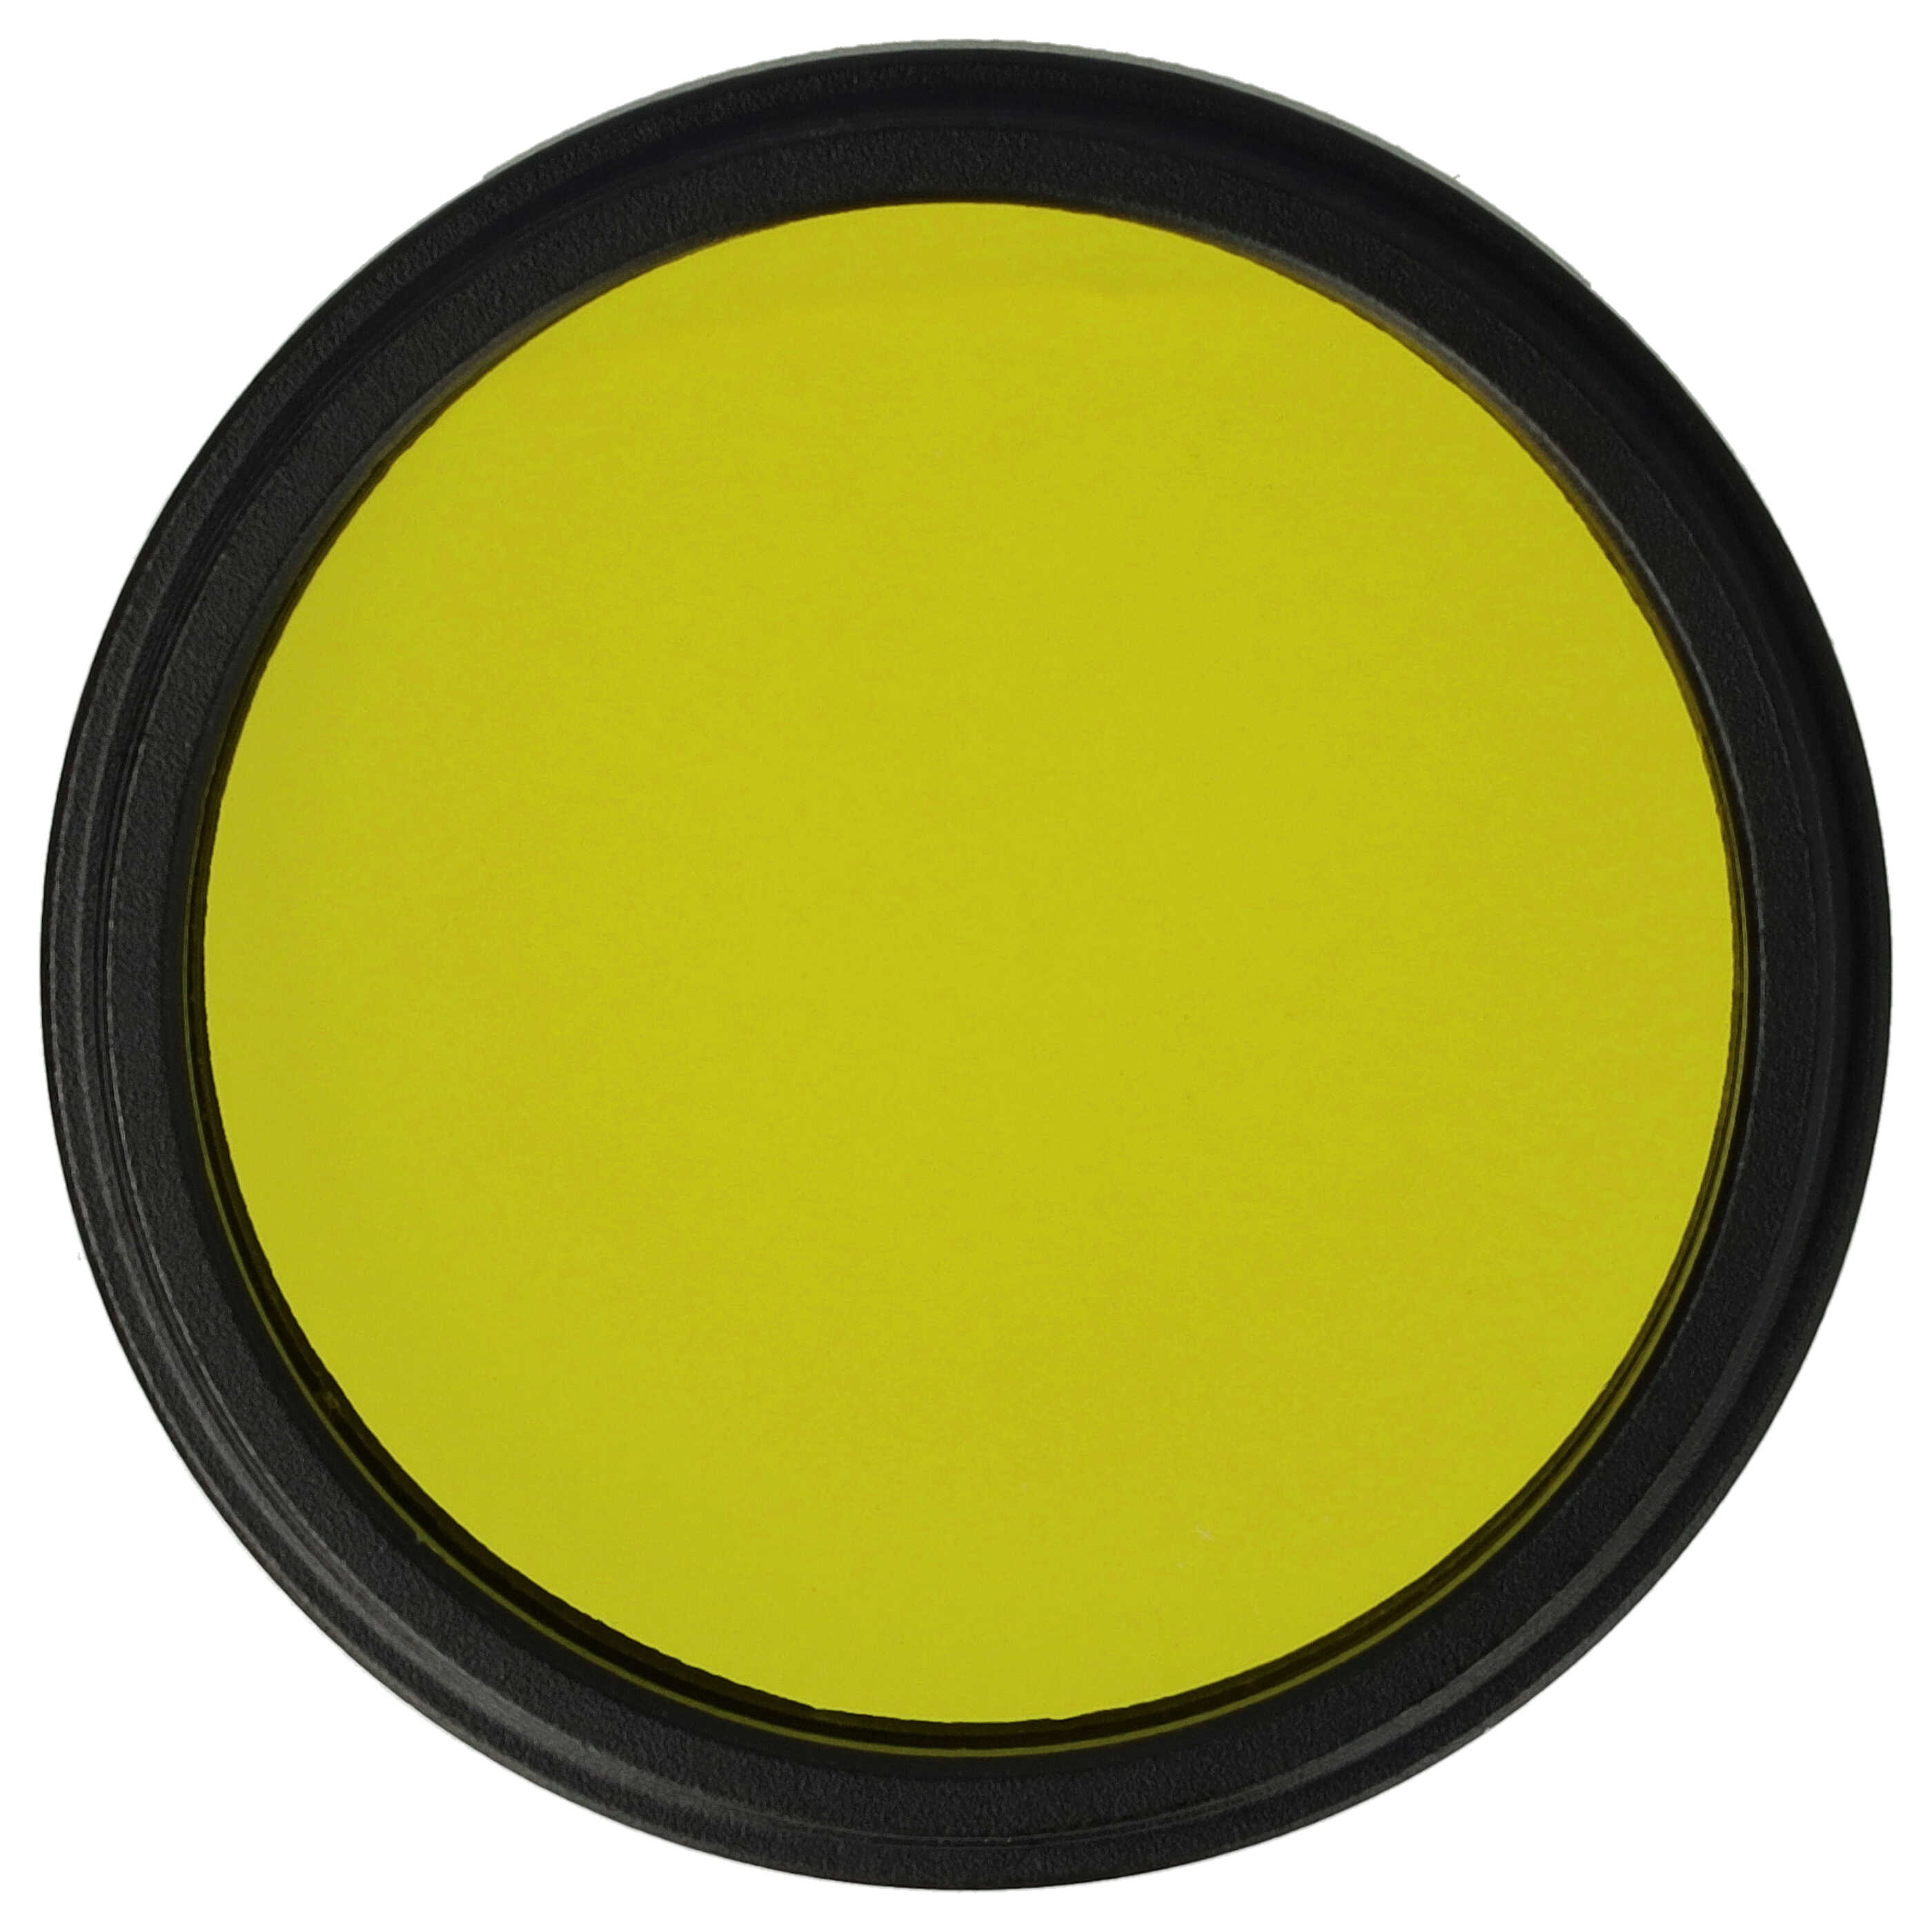 Filtro colorato per obiettivi fotocamera con filettatura da 40,5 mm - filtro giallo